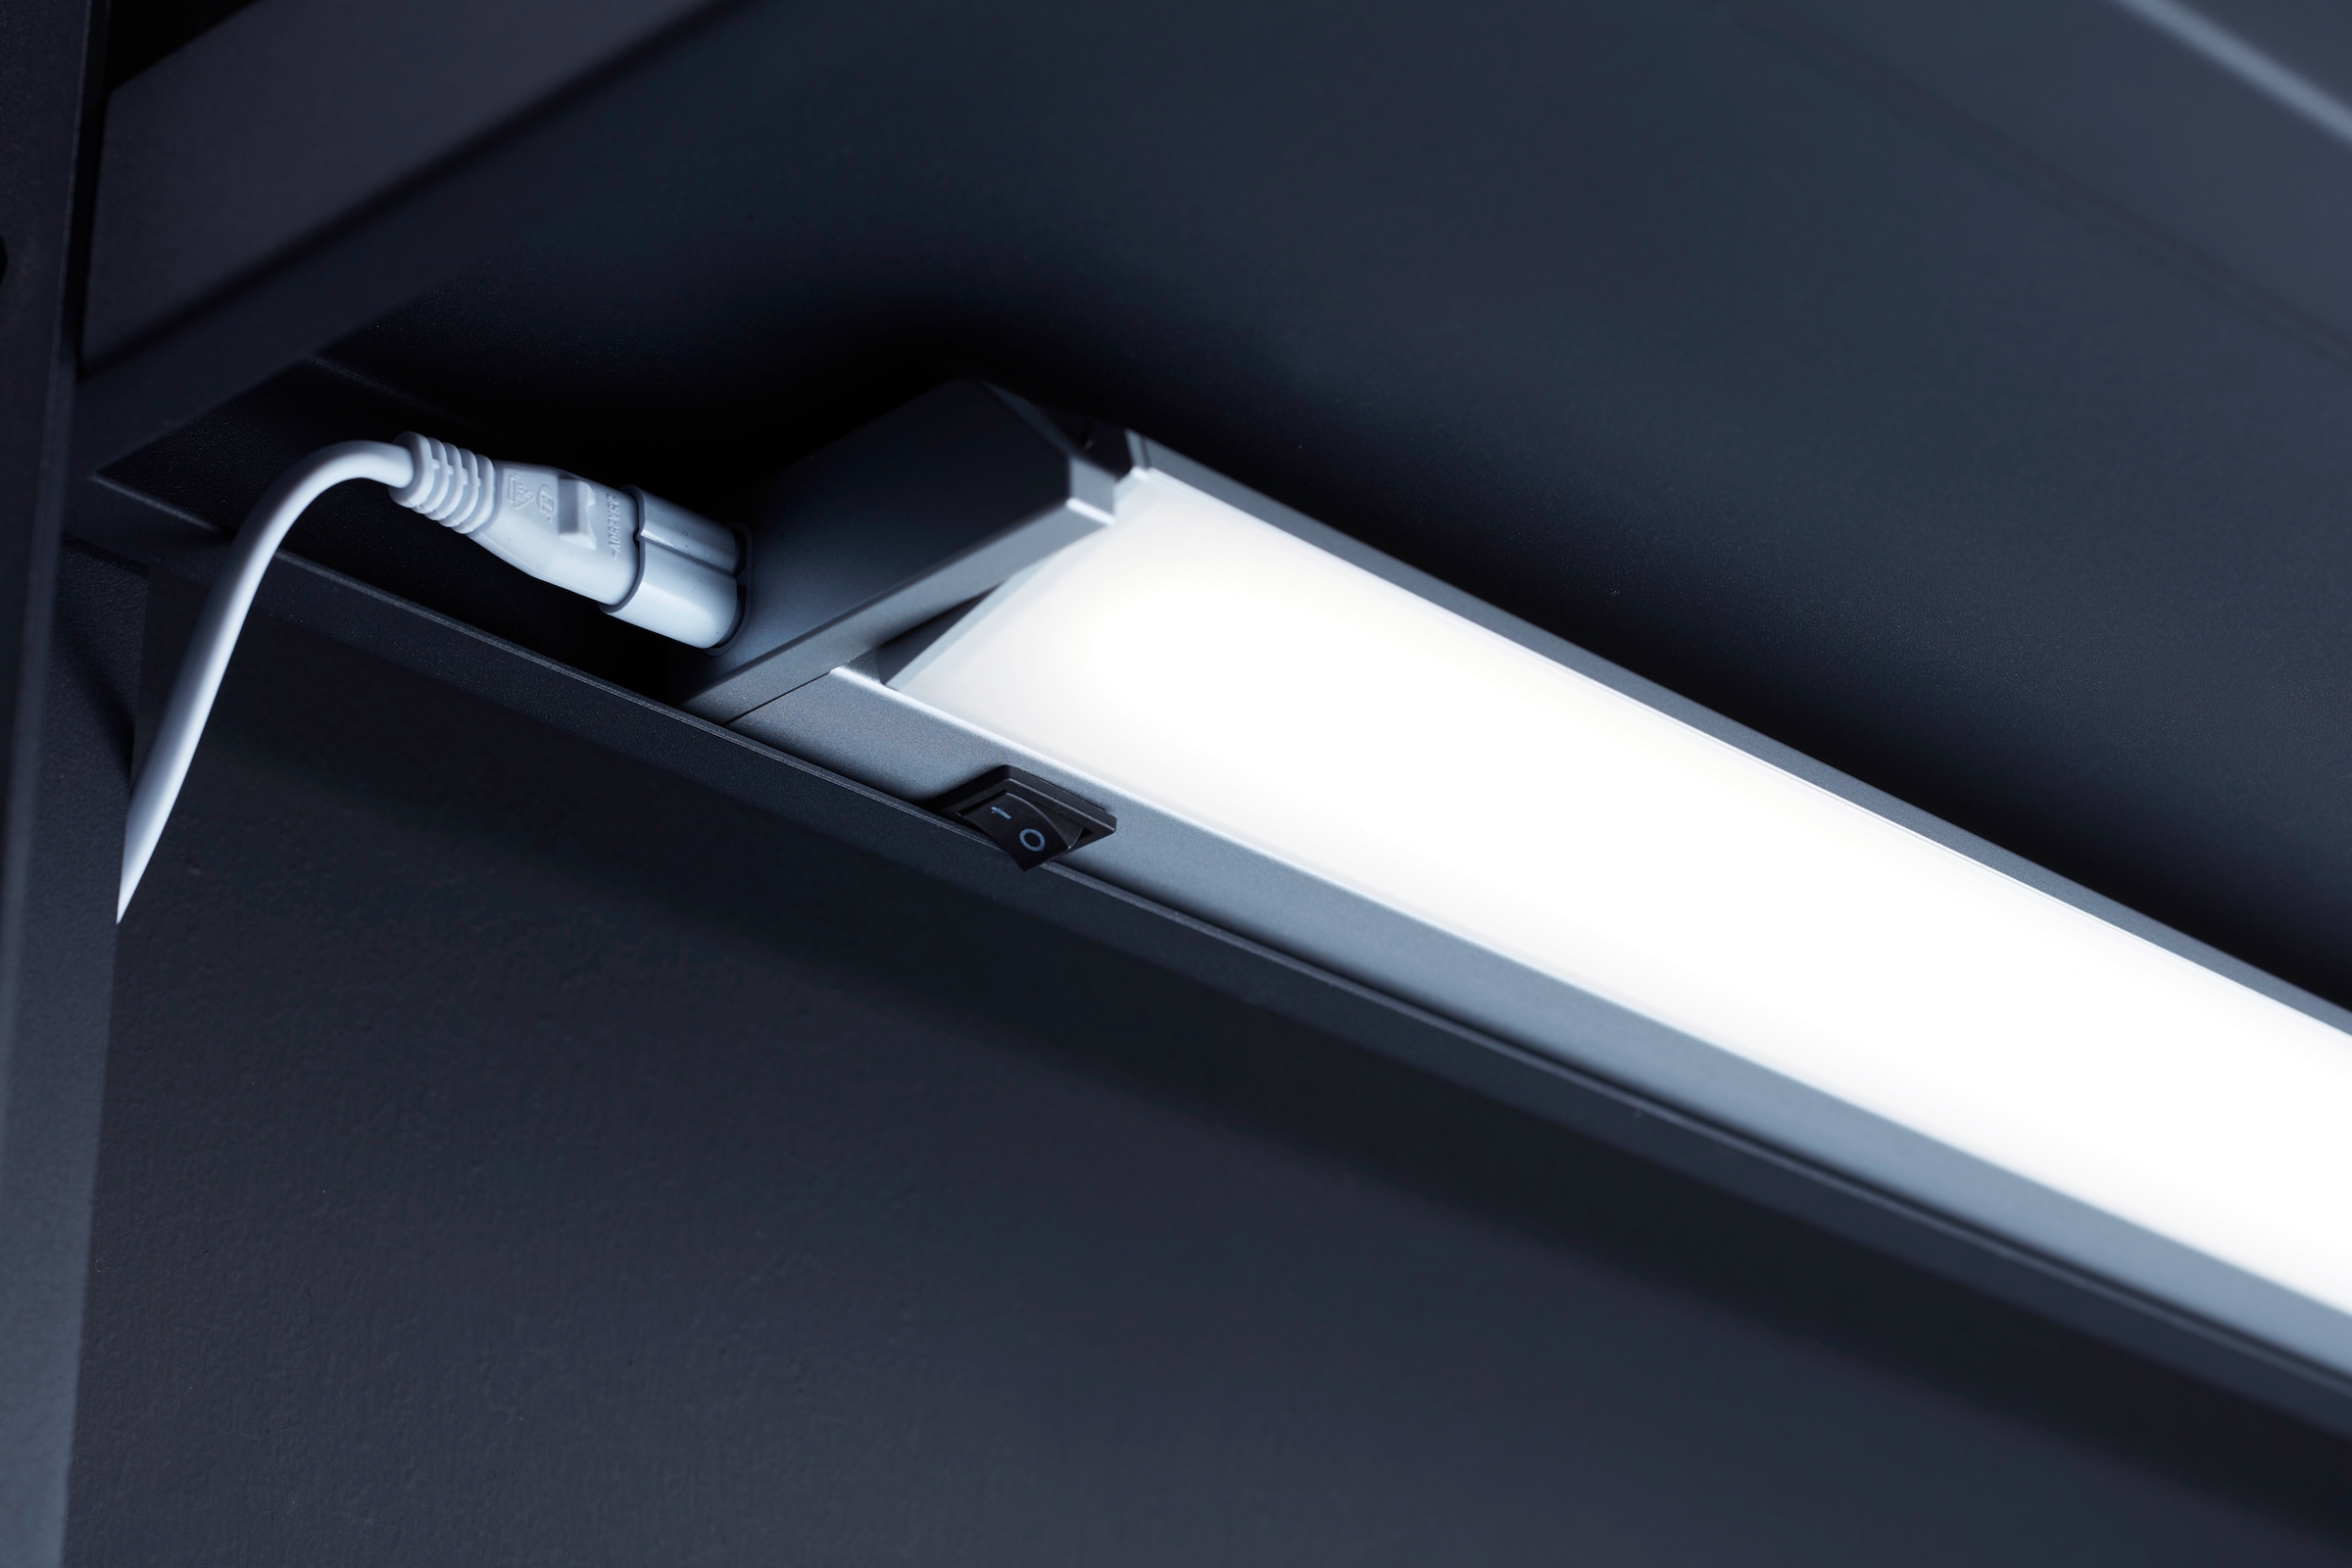 Loevschall LED Unterbauleuchte »LED Striplight 911mm«, Hohe Lichtausbeute, Schwenkbar